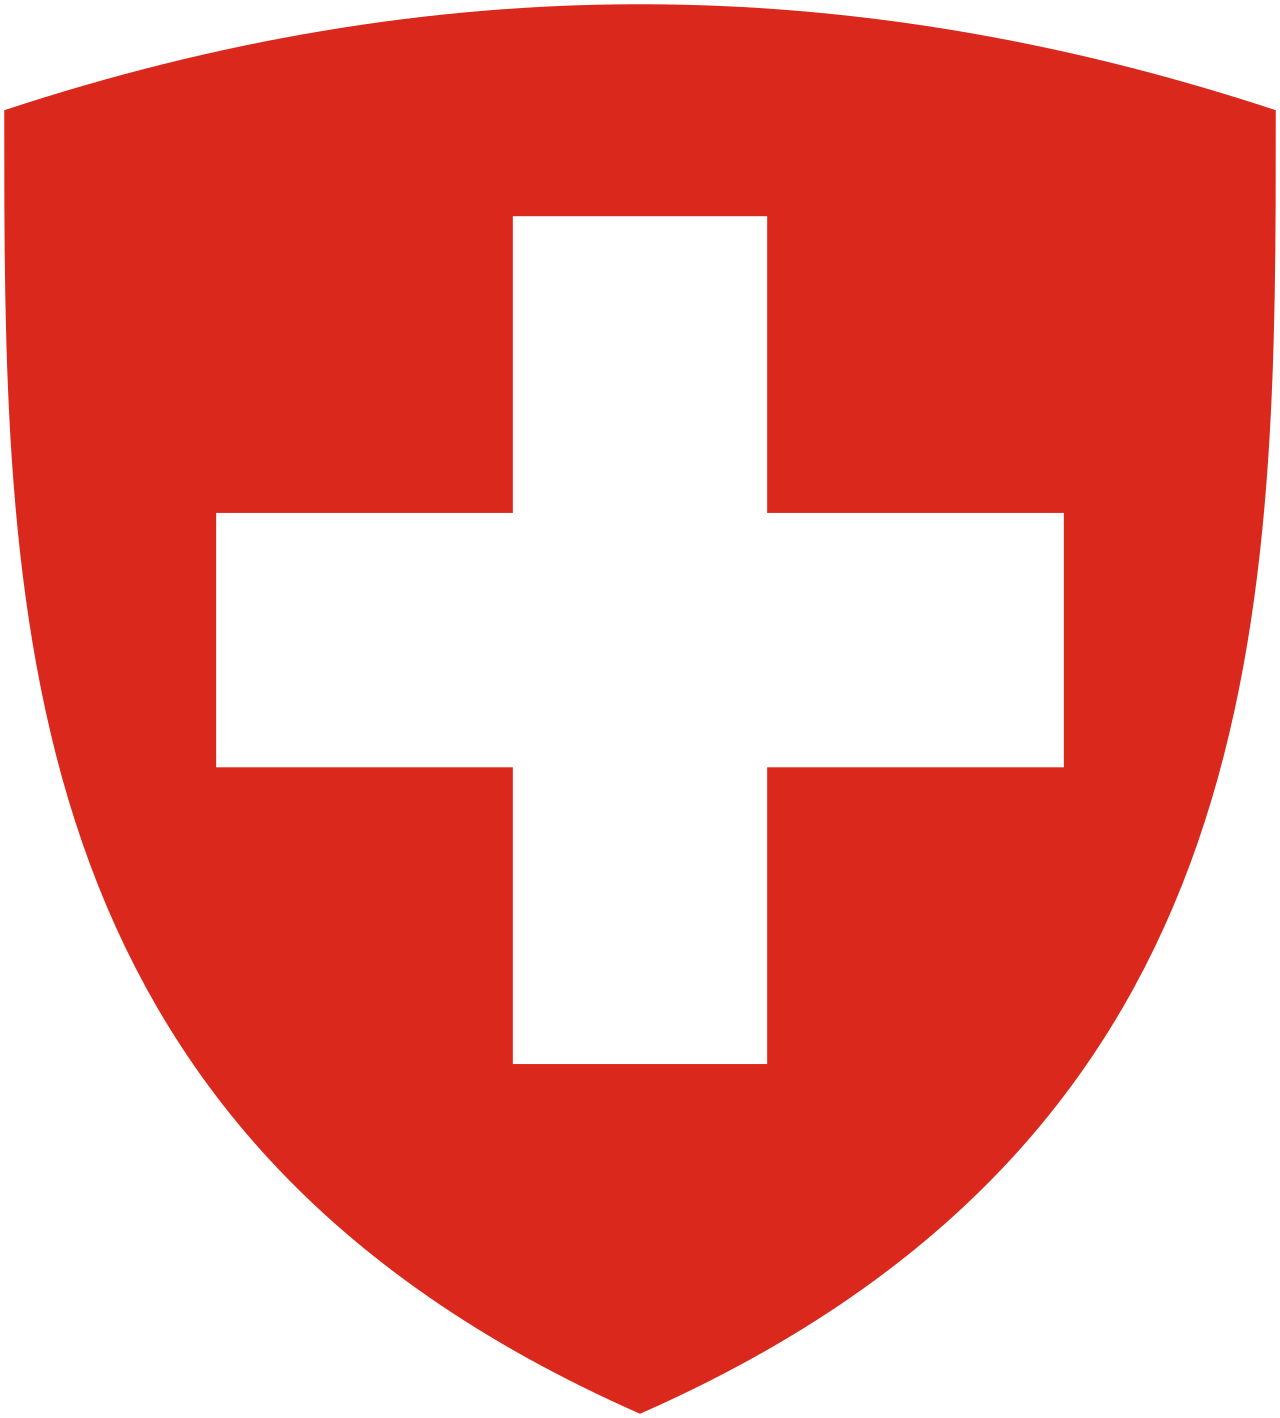 Федеральный совет Швейцарии - Органы государственной власти Швейцарская Конфедерация